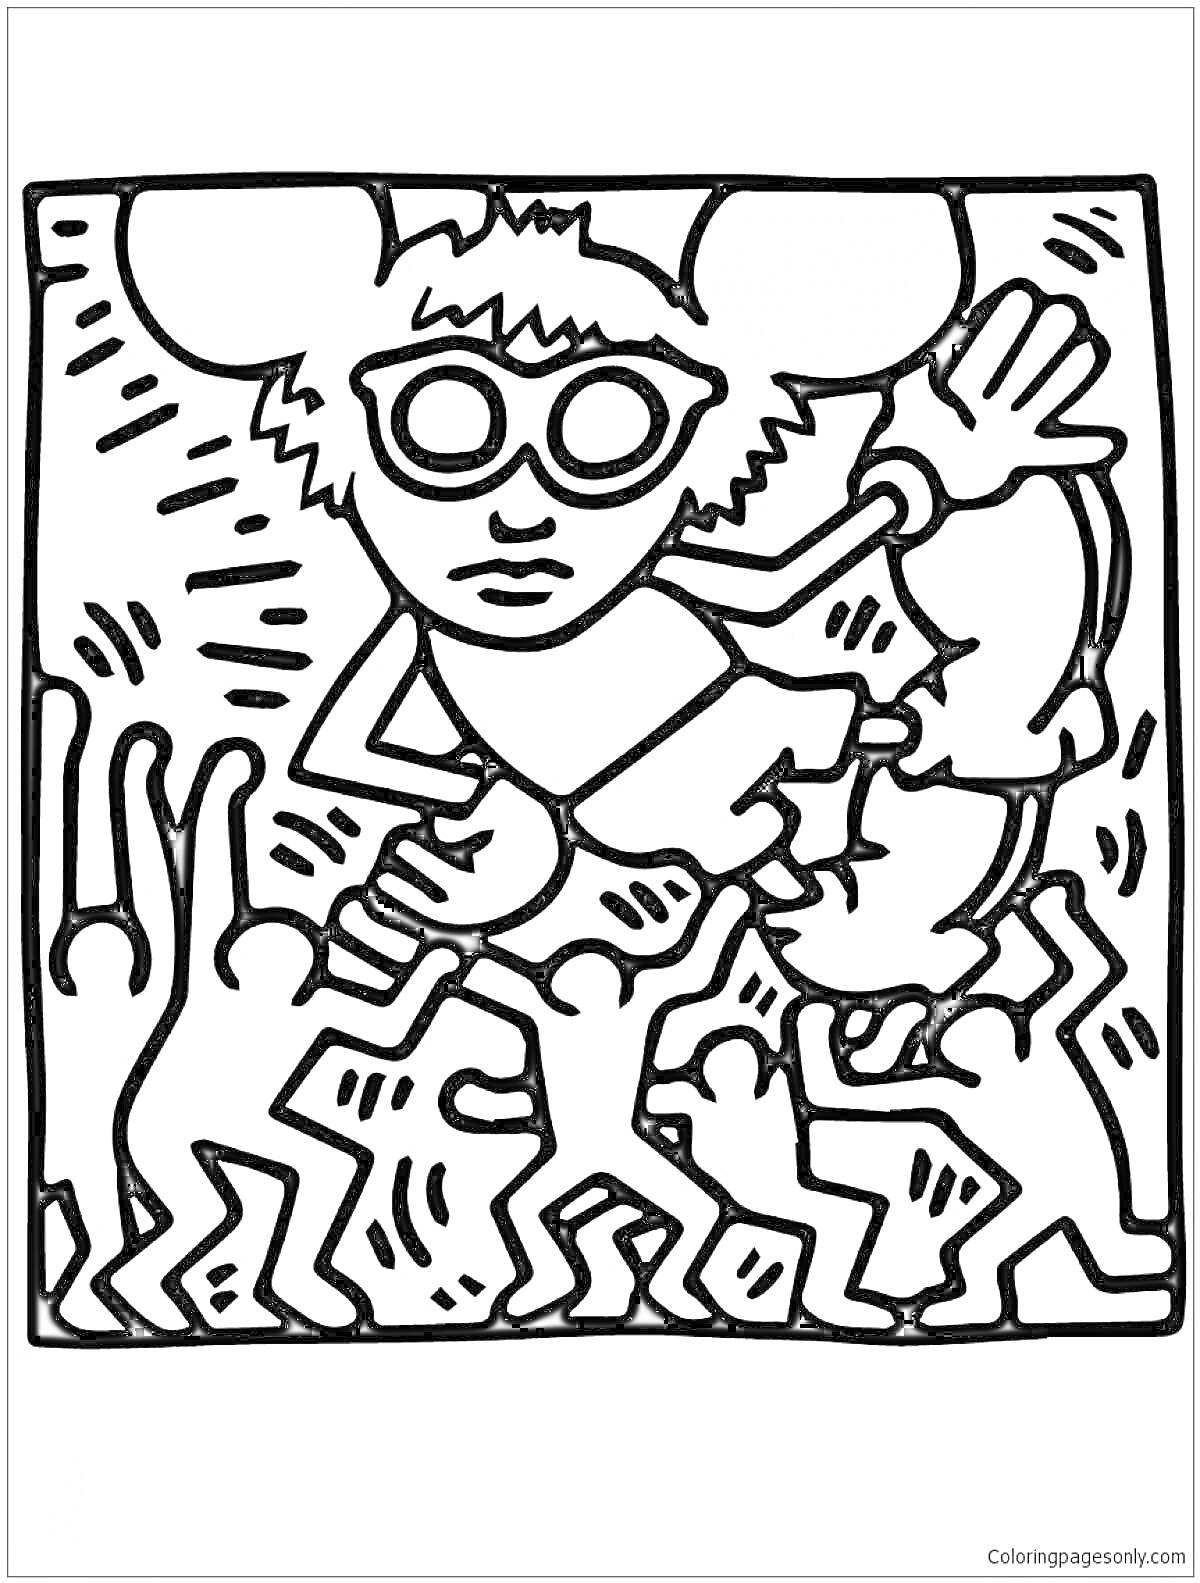 Раскраска Человек в очках с большими ушами, держащий мальчика, окруженный танцующими силуэтами